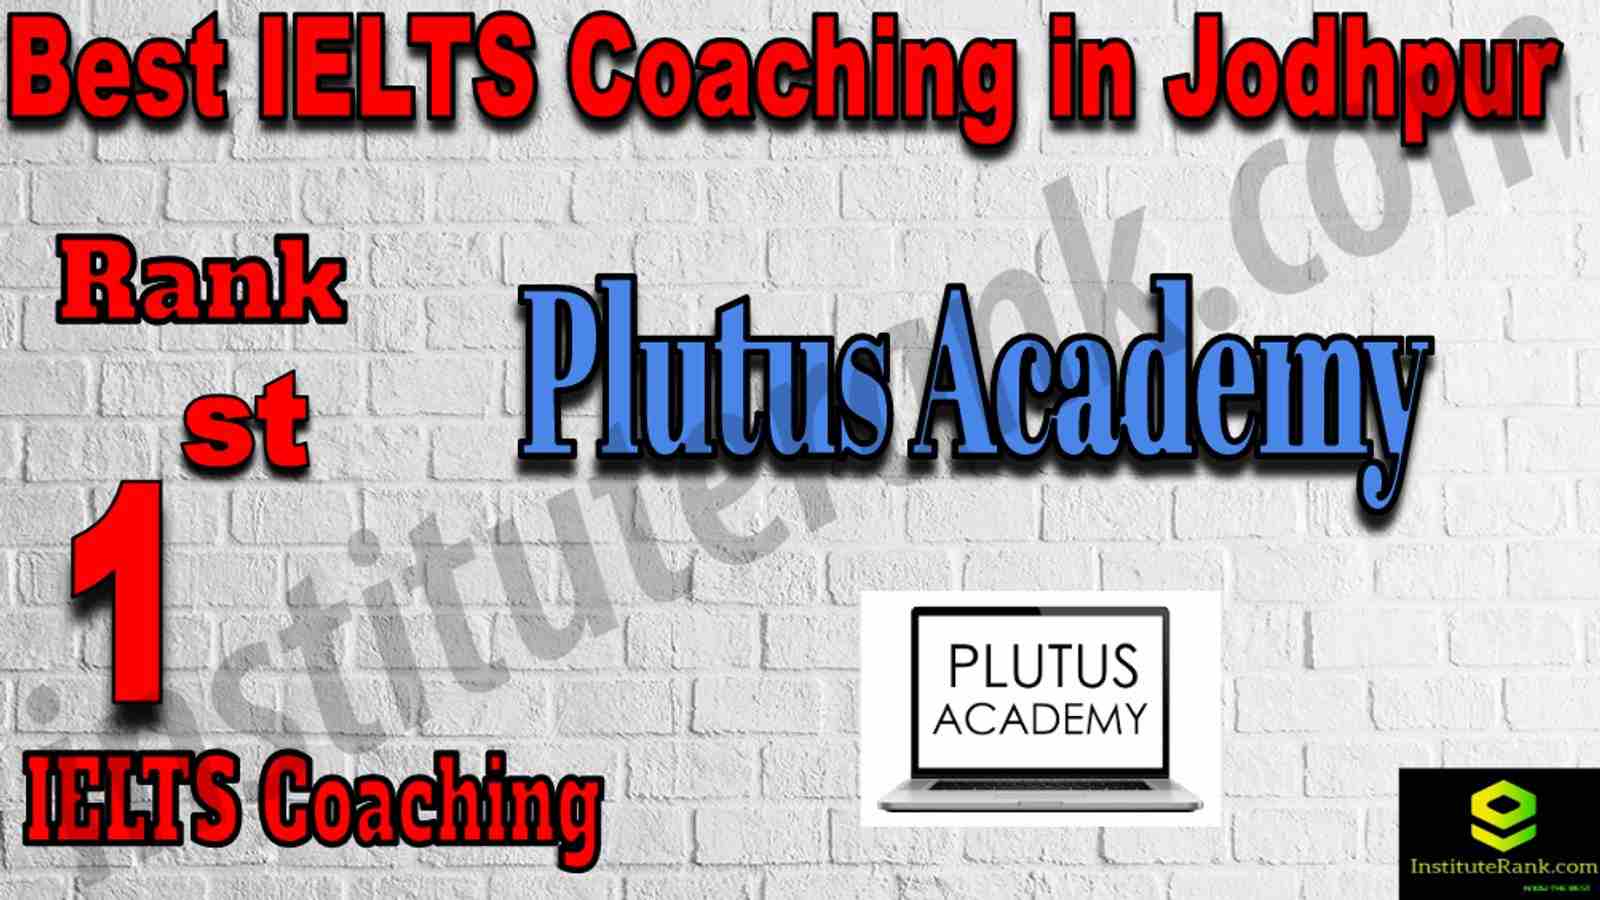 1st Best IELTS Coaching in Jodhpur